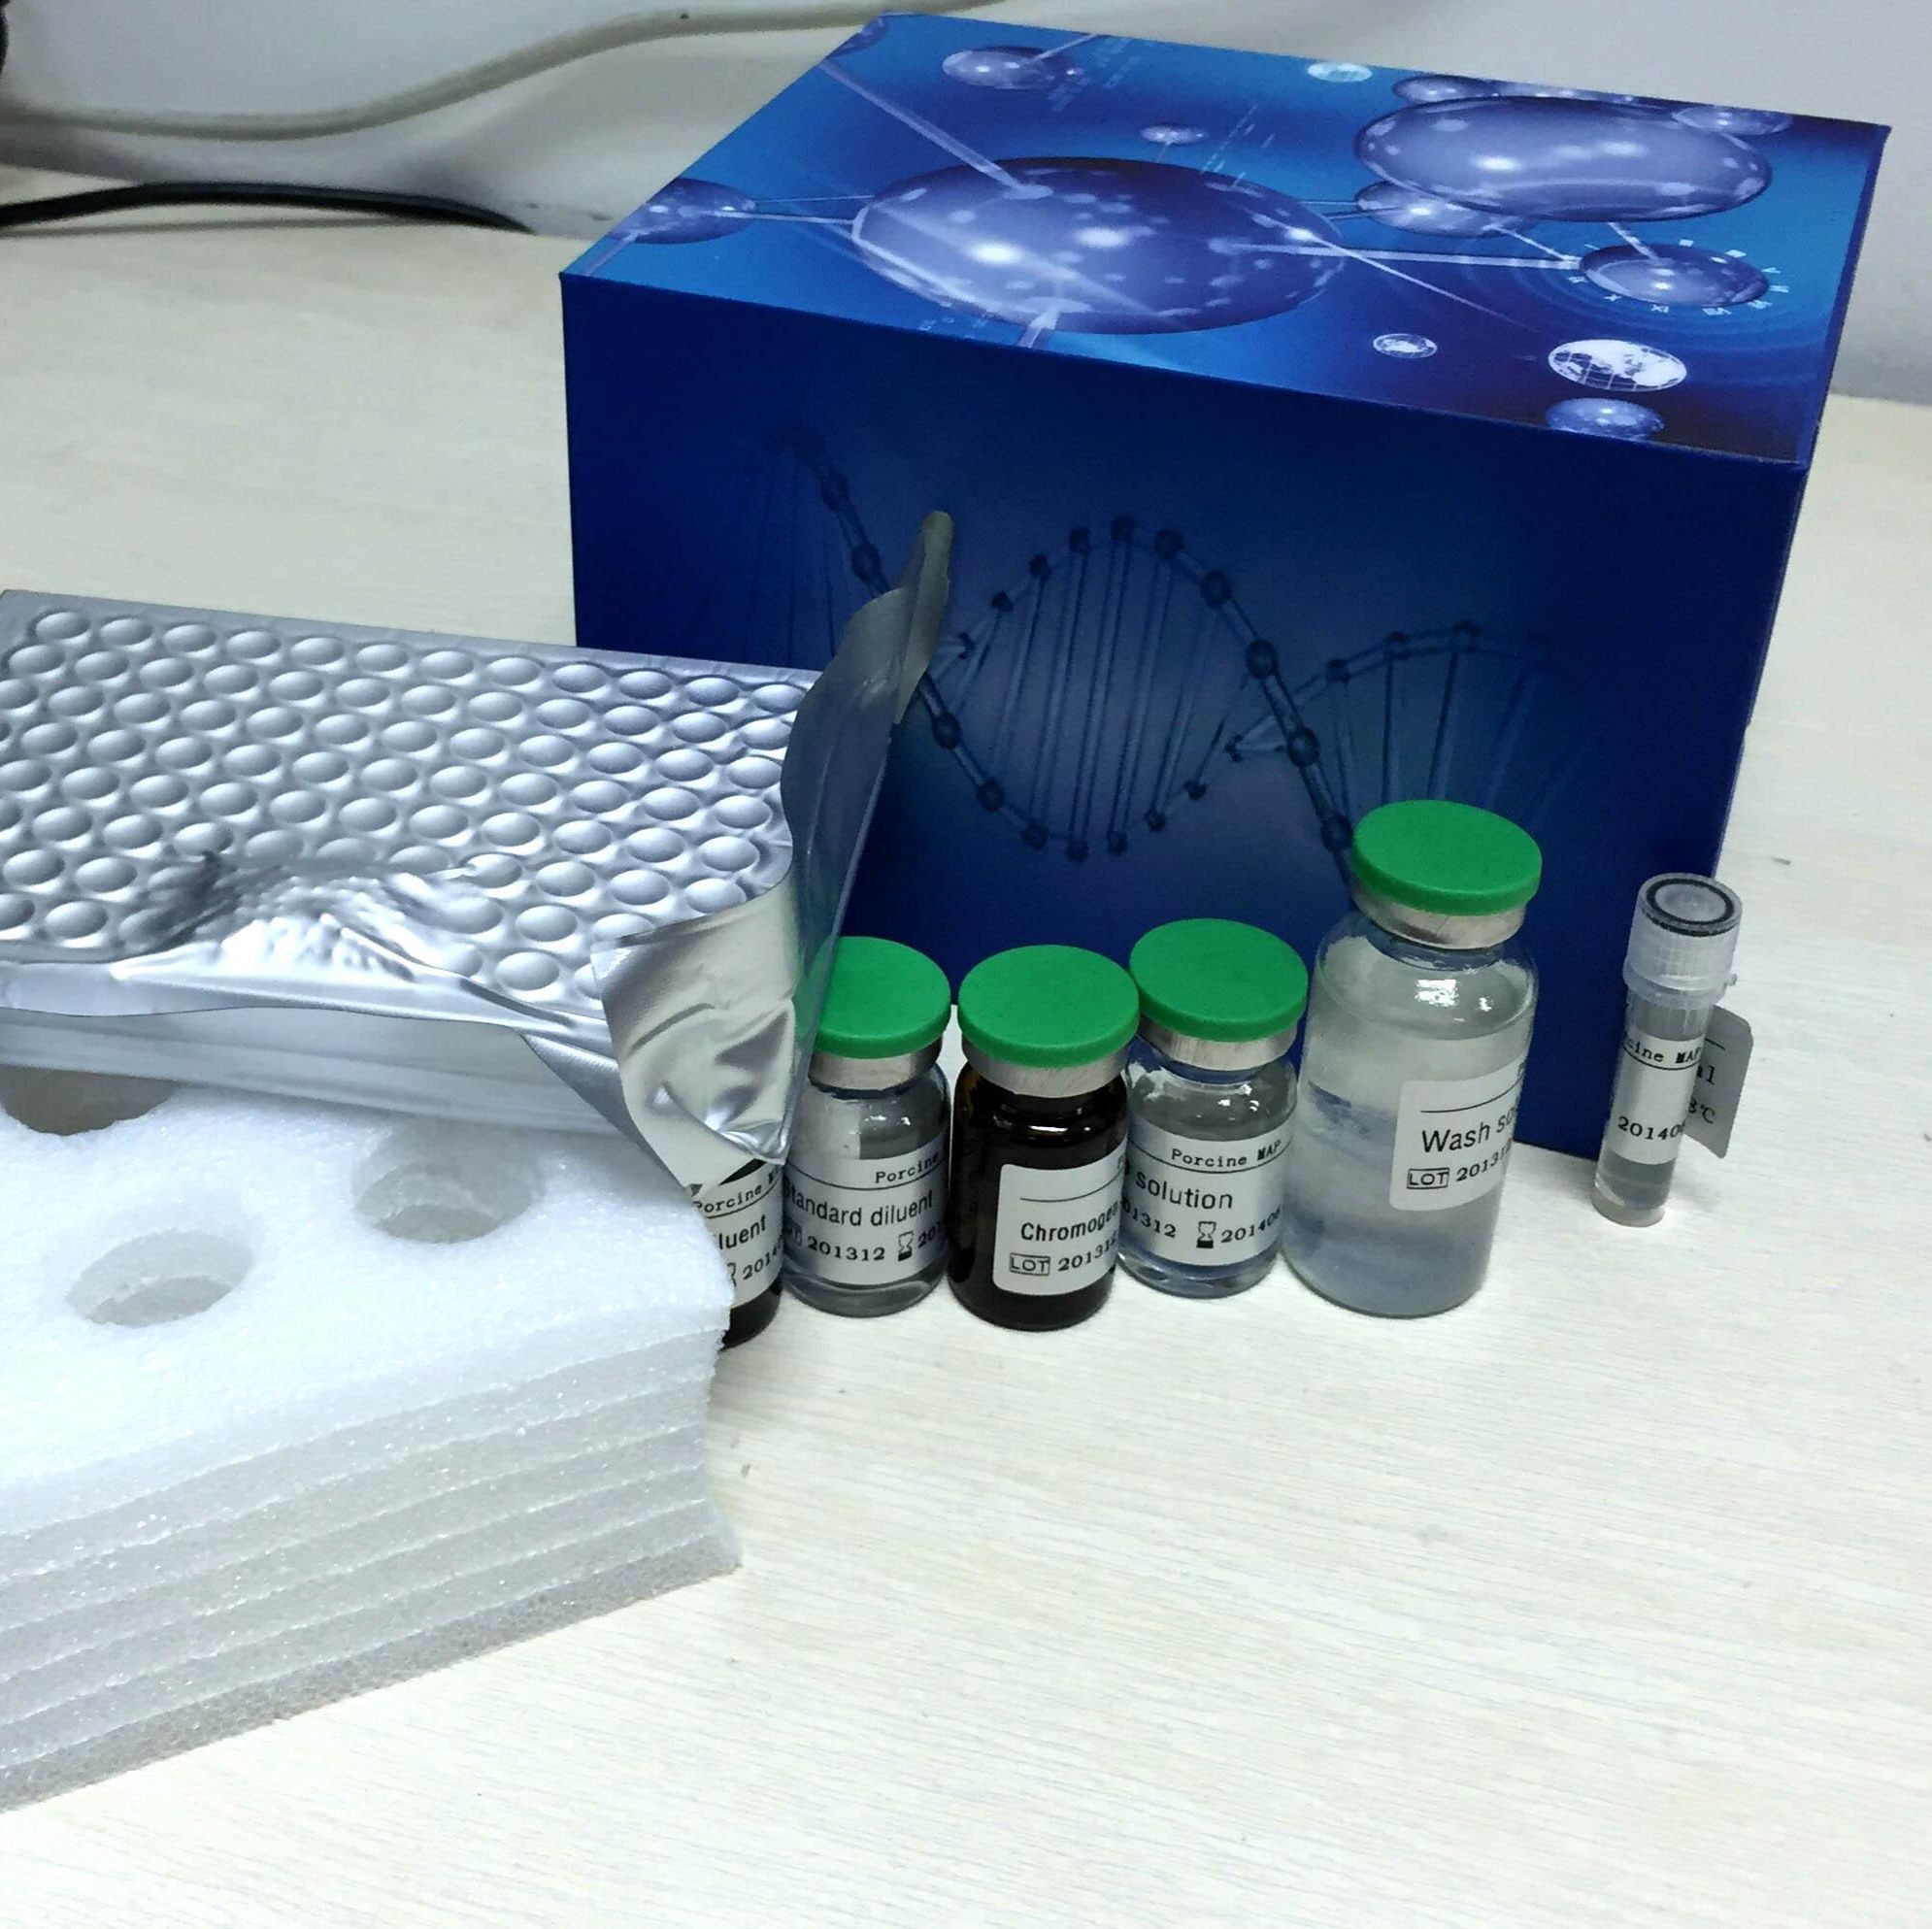 人抗着丝点抗体(ACA/CENP)ELISA试剂盒